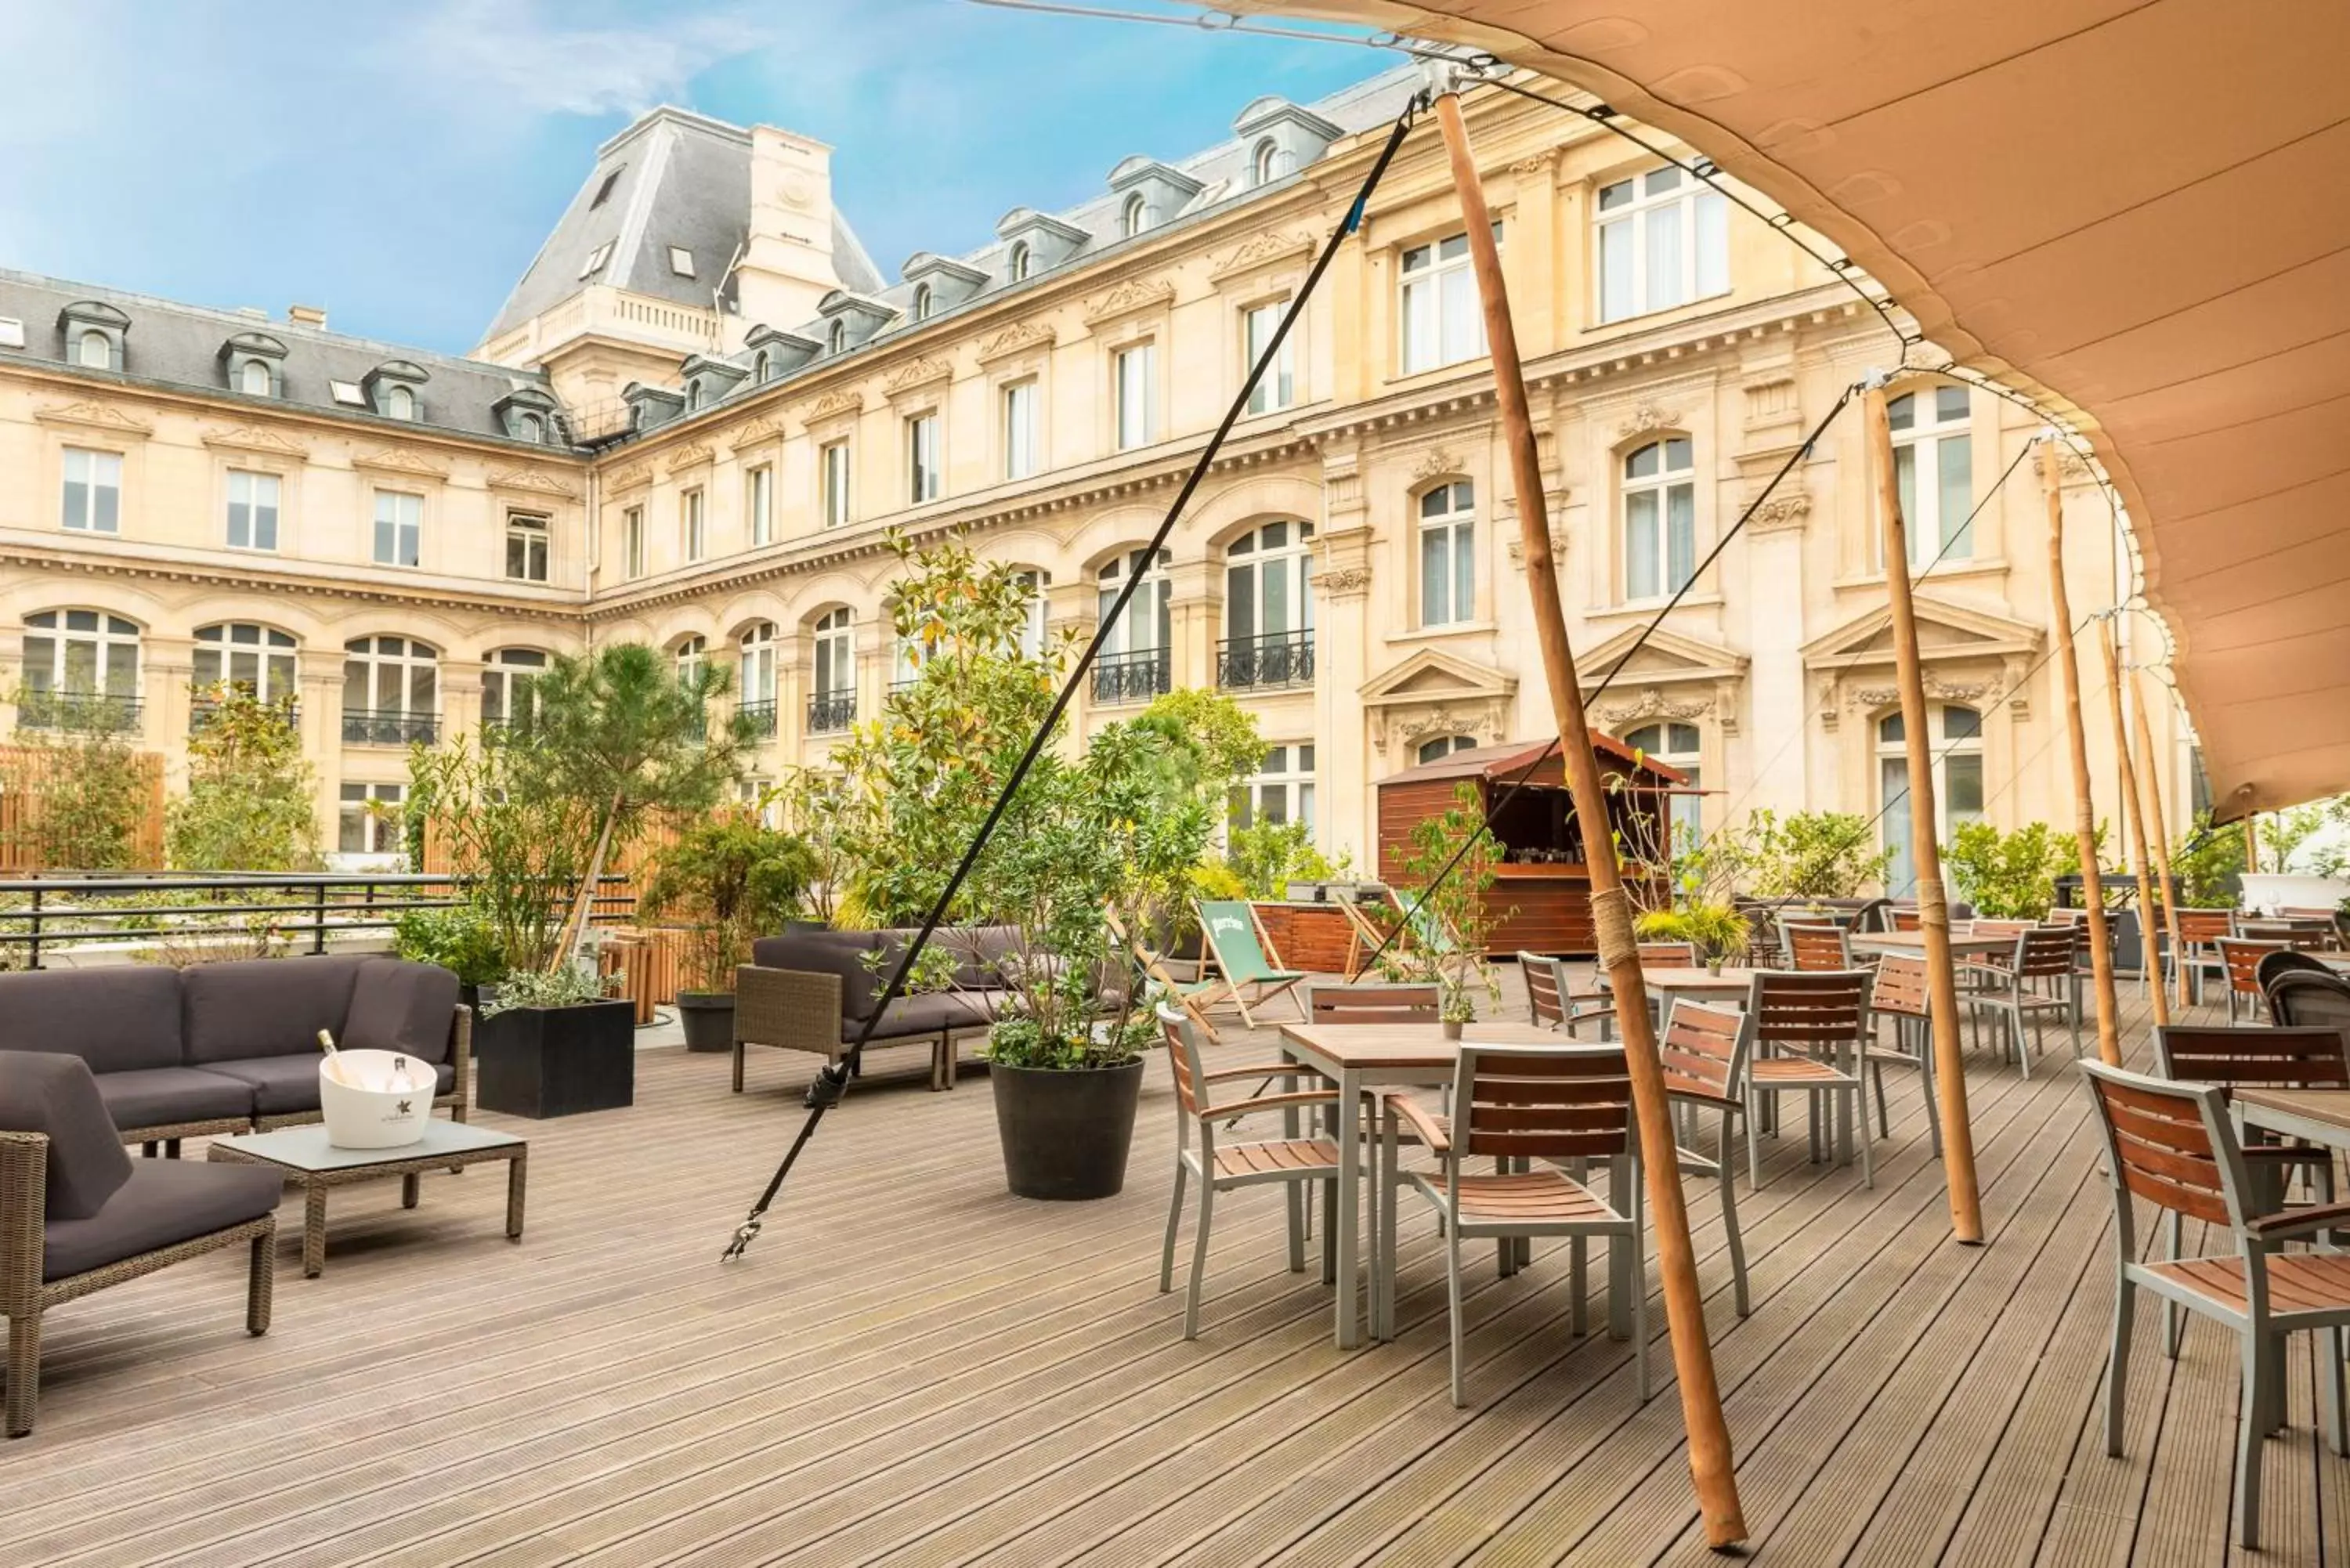 Property building, Restaurant/Places to Eat in Crowne Plaza Paris République, an IHG Hotel